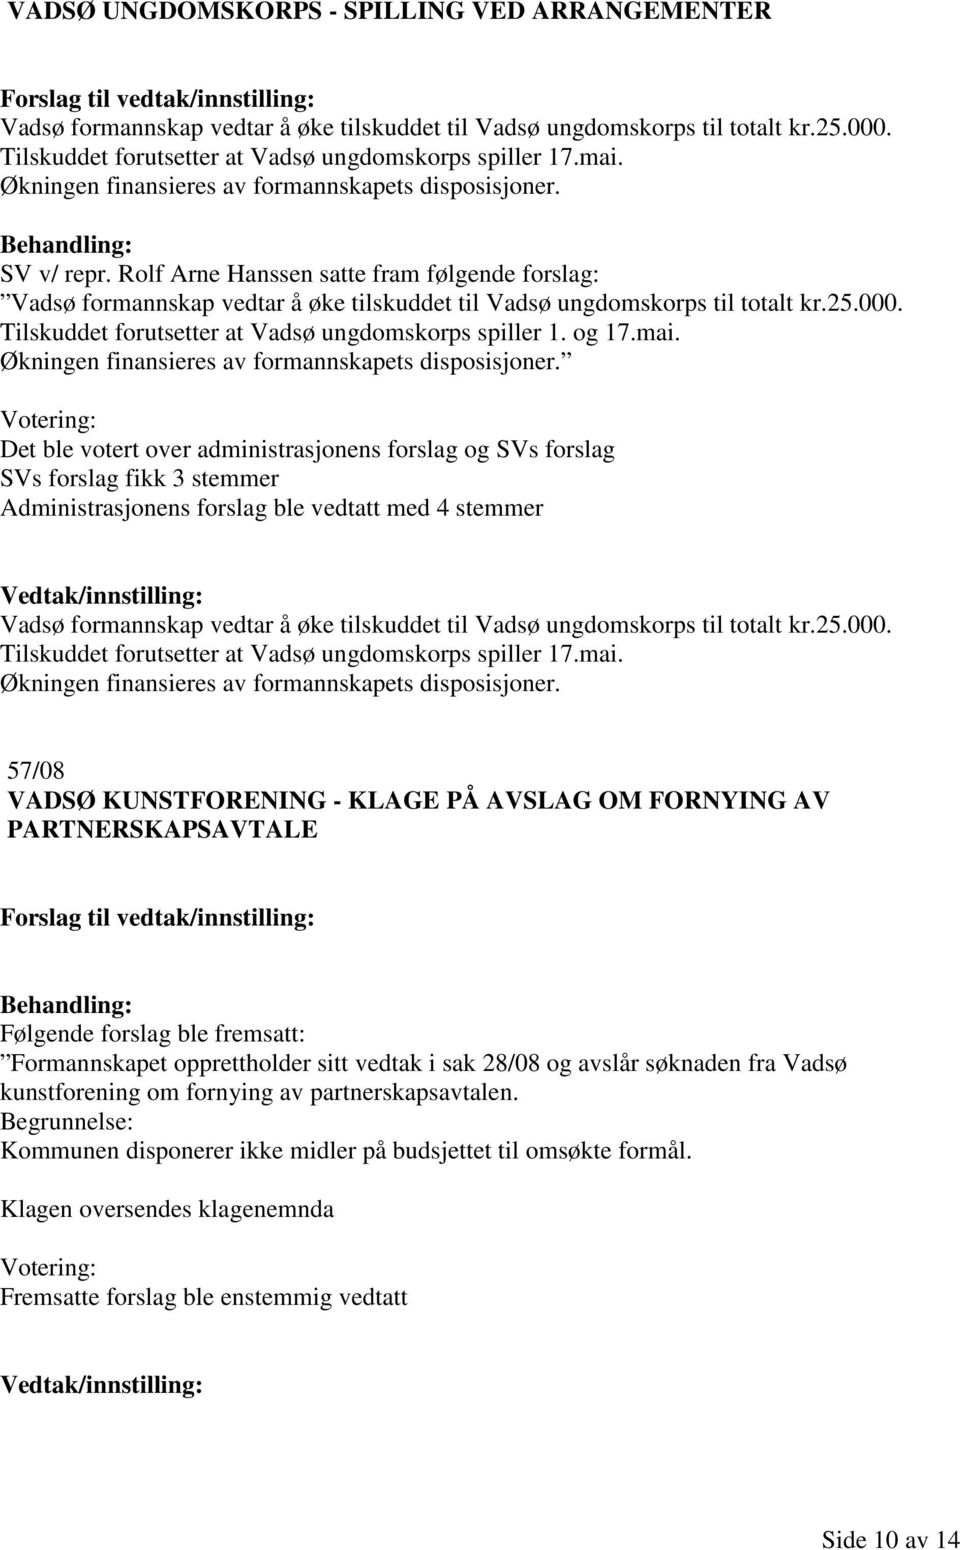 Tilskuddet forutsetter at Vadsø ungdomskorps spiller 1. og 17.mai. Økningen finansieres av formannskapets disposisjoner.